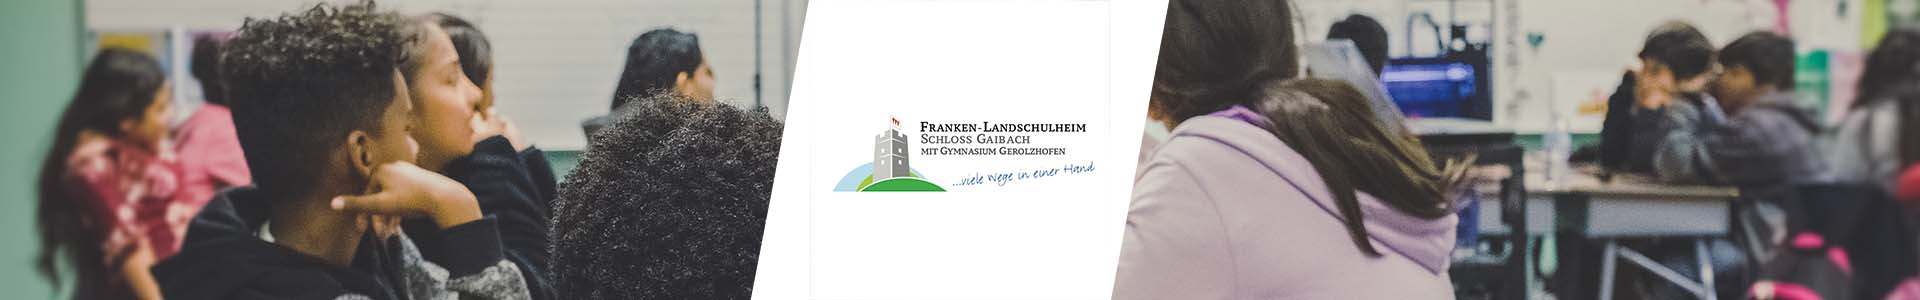 landschulheim banner